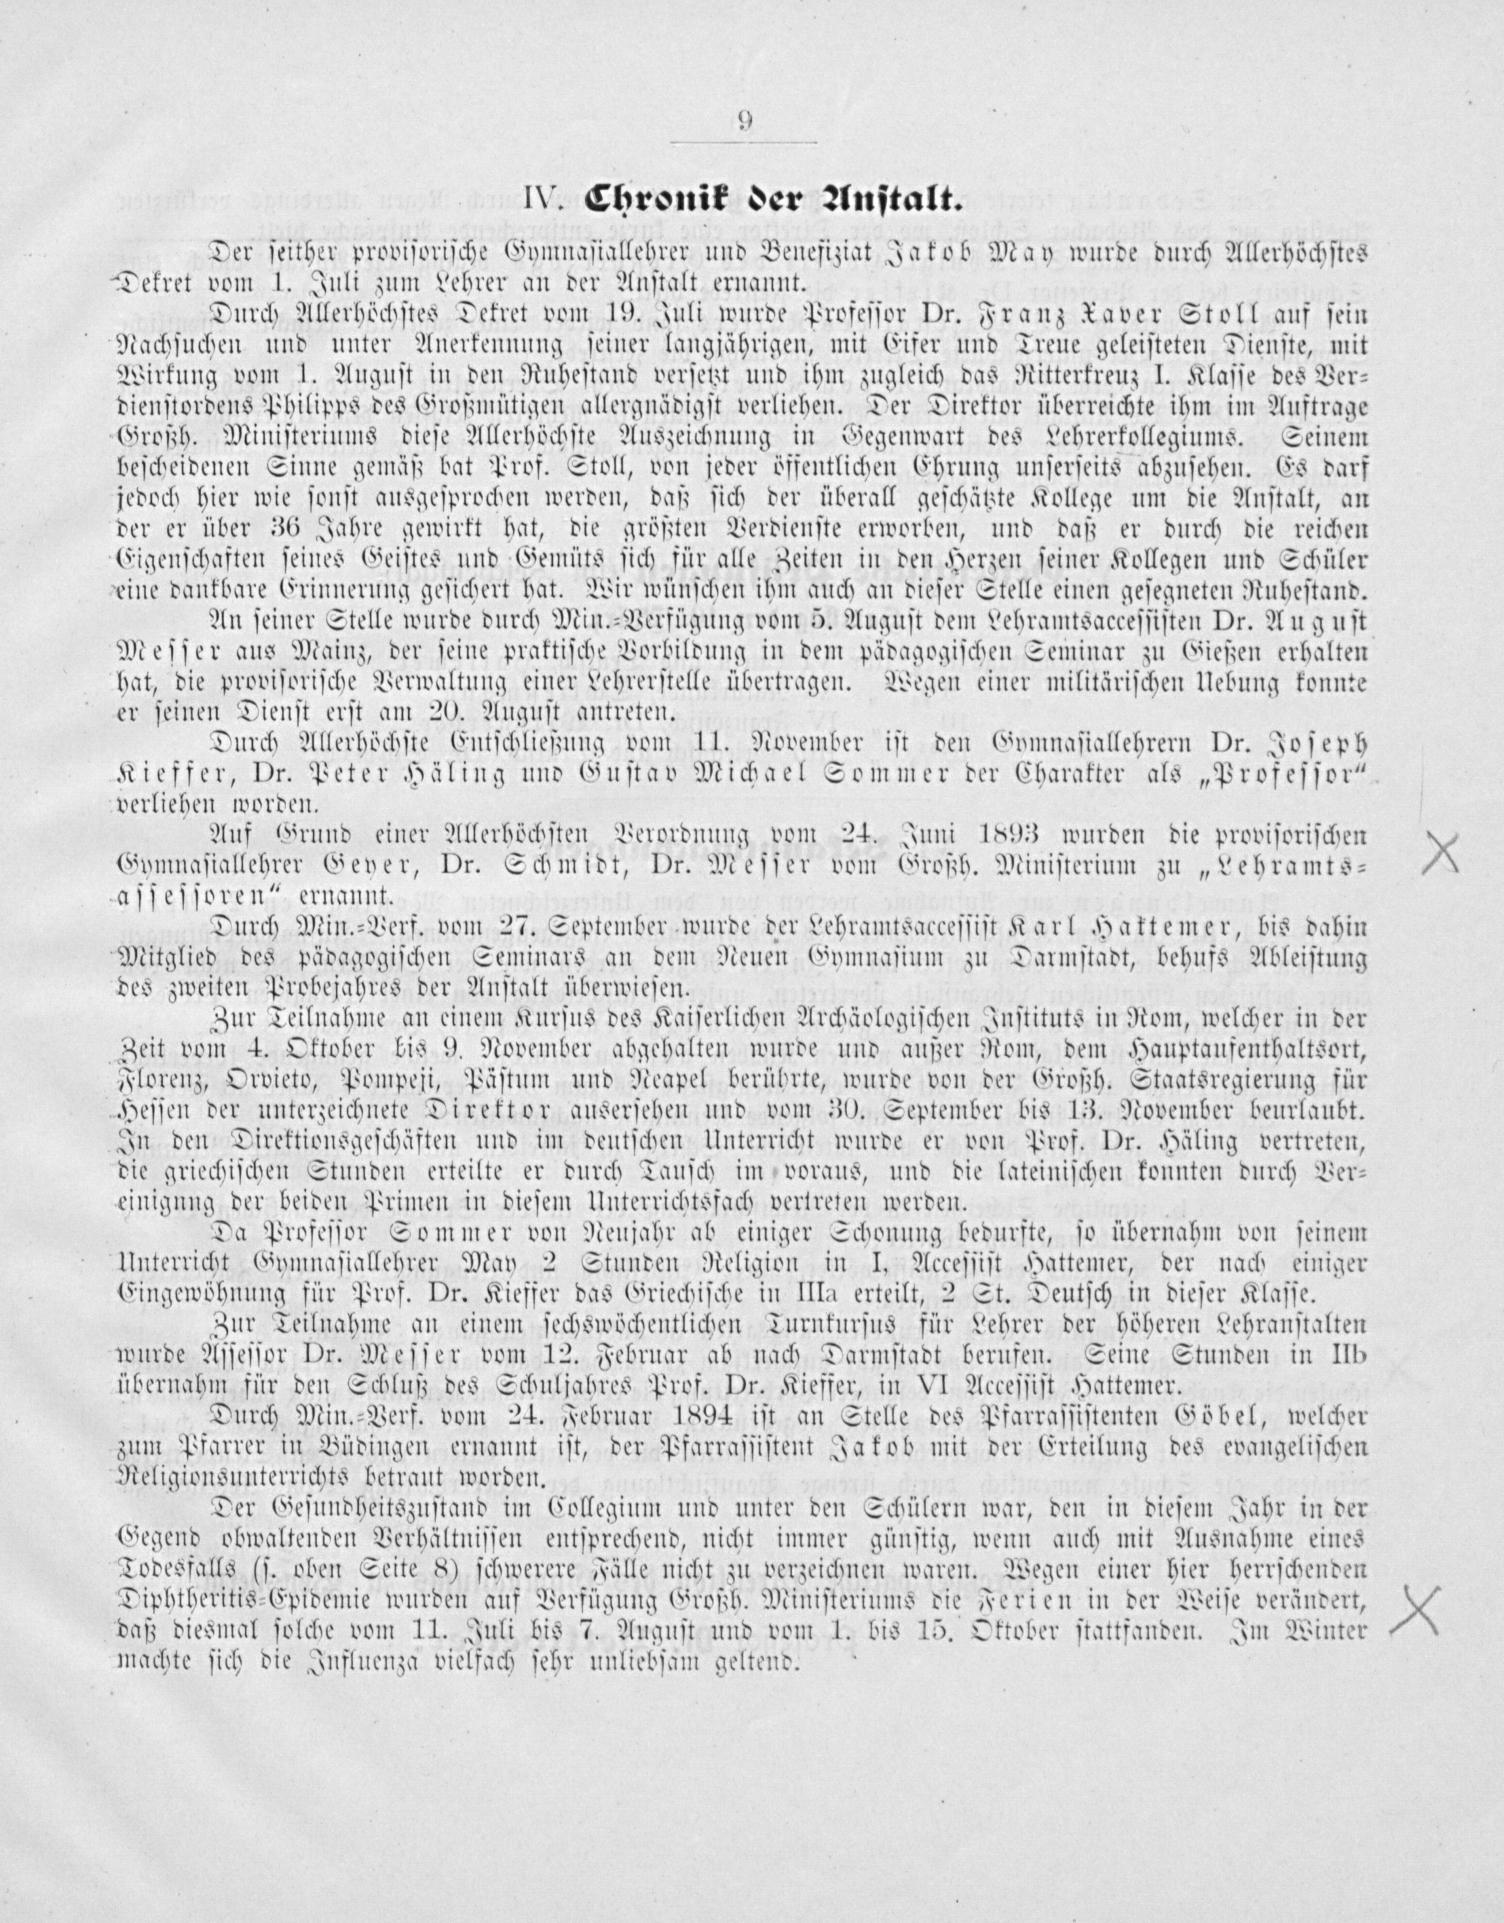 Programm des Großherzoglichen Gymnasiums zu Bensheim für das Schuljahr 1893/94, Seite 9, Bensheim, 1894. (Pensionierung Franz Xaver Stolls).